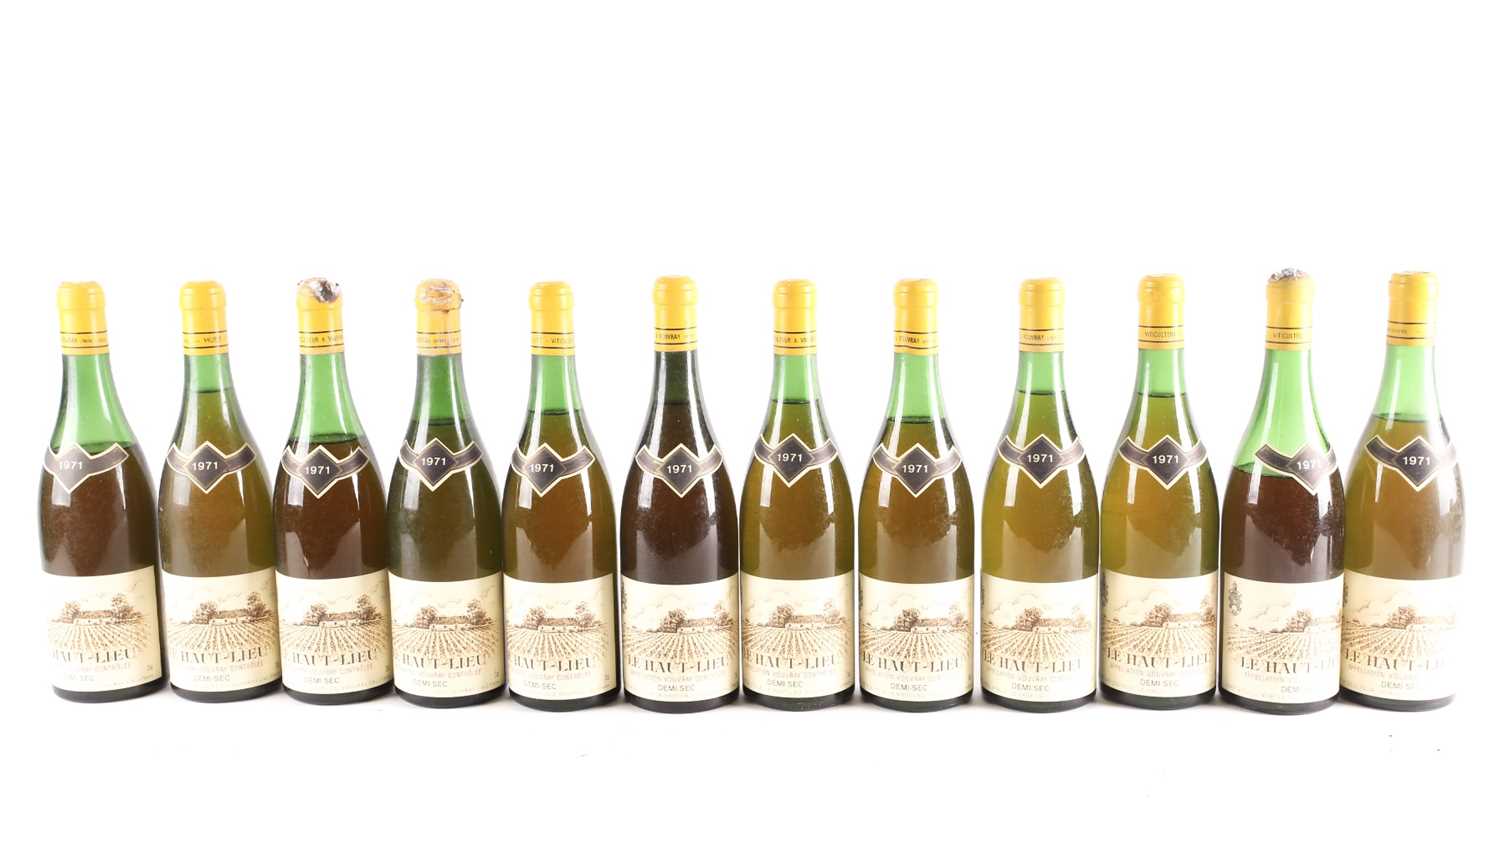 Lot 272 - Twelve bottles of 1971 Vouvray Le Haut Lieu,...